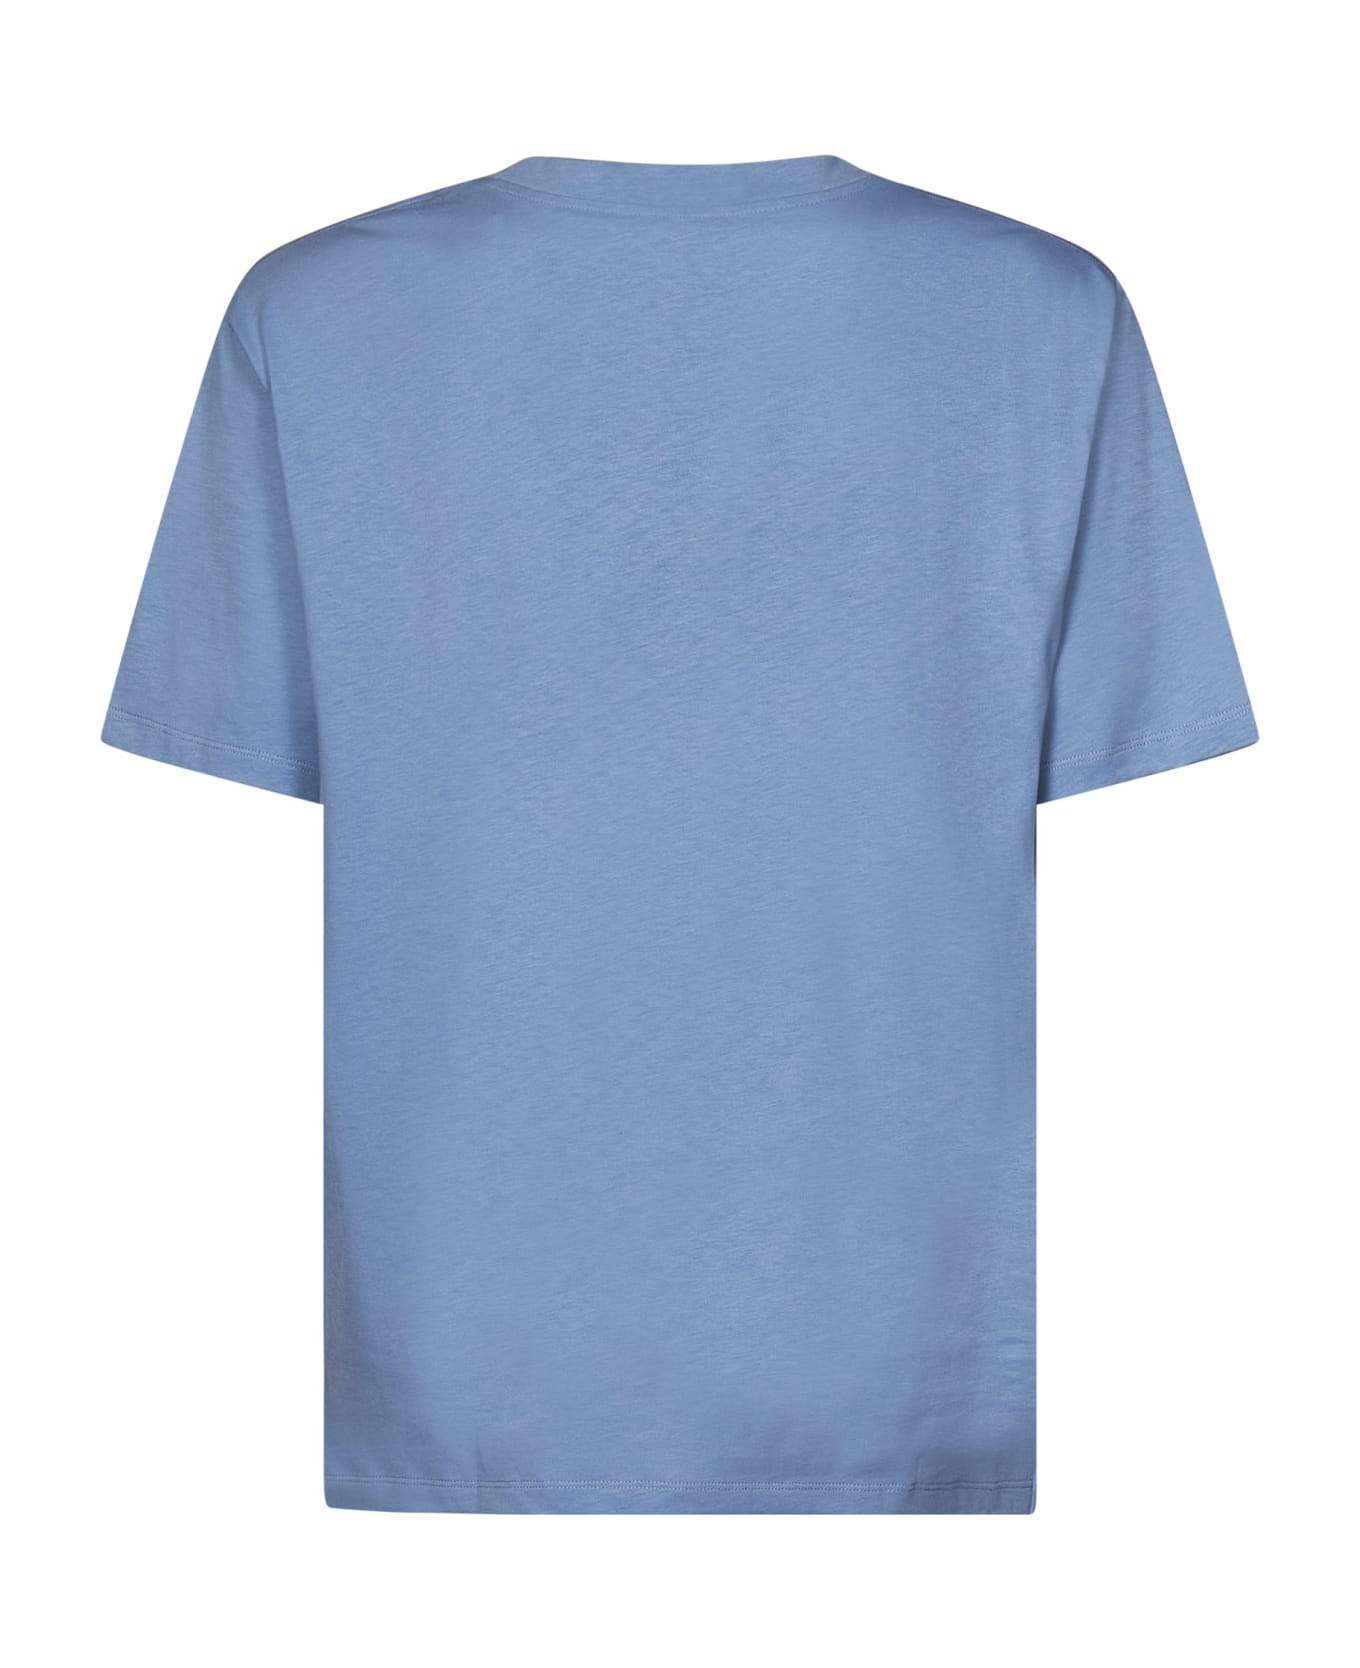 Balmain T-shirt - Light blue